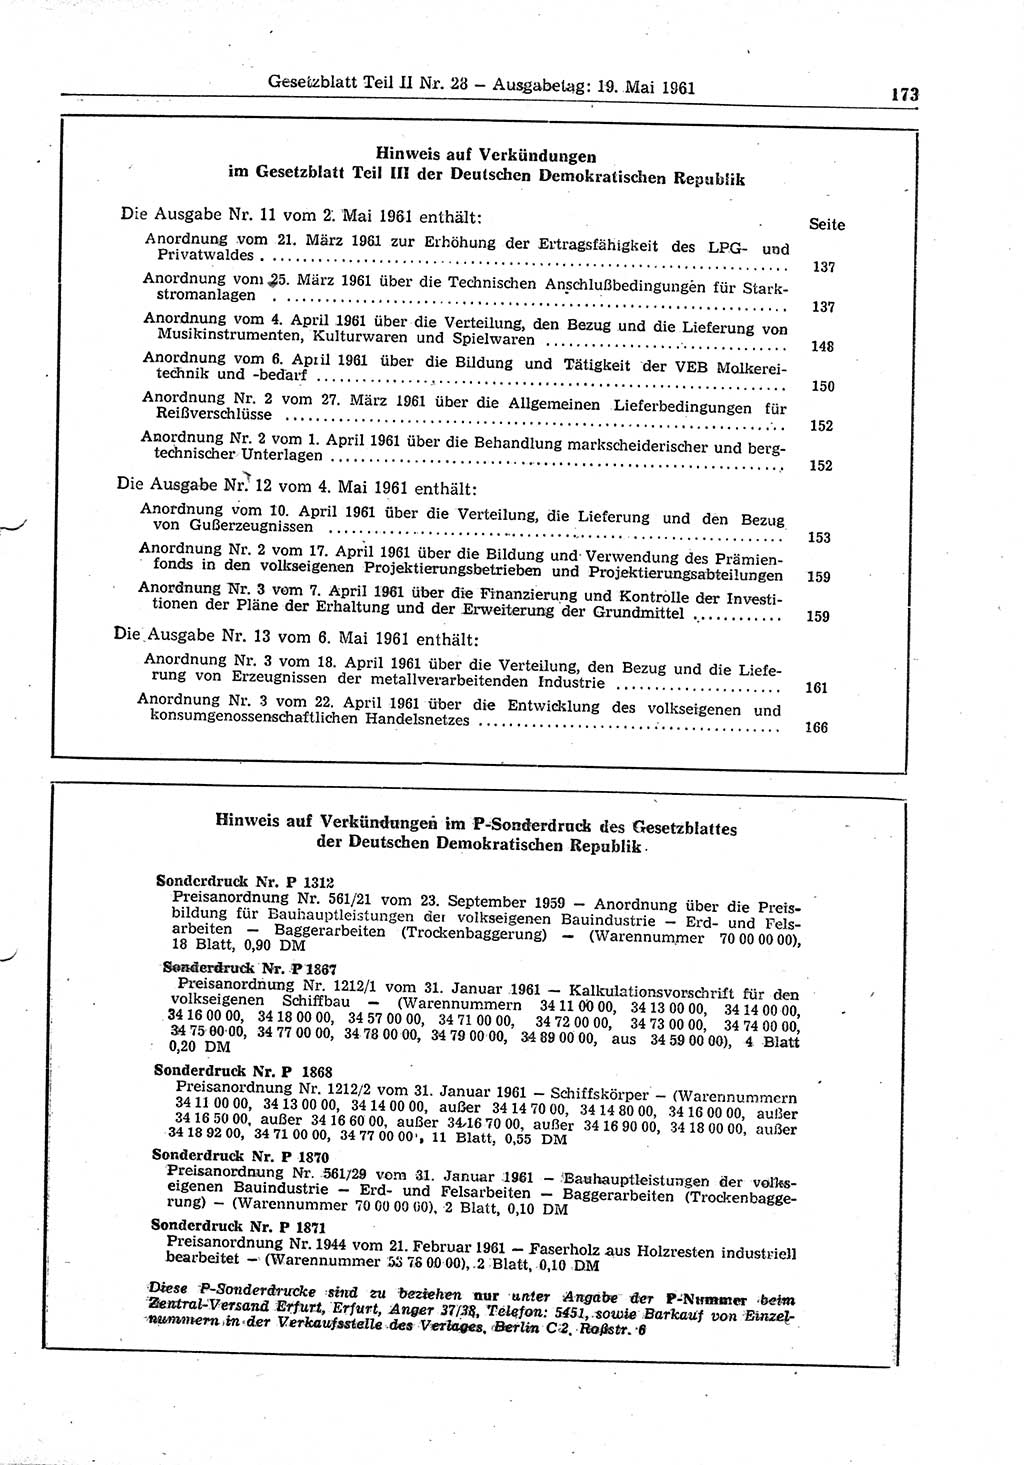 Gesetzblatt (GBl.) der Deutschen Demokratischen Republik (DDR) Teil ⅠⅠ 1961, Seite 173 (GBl. DDR ⅠⅠ 1961, S. 173)